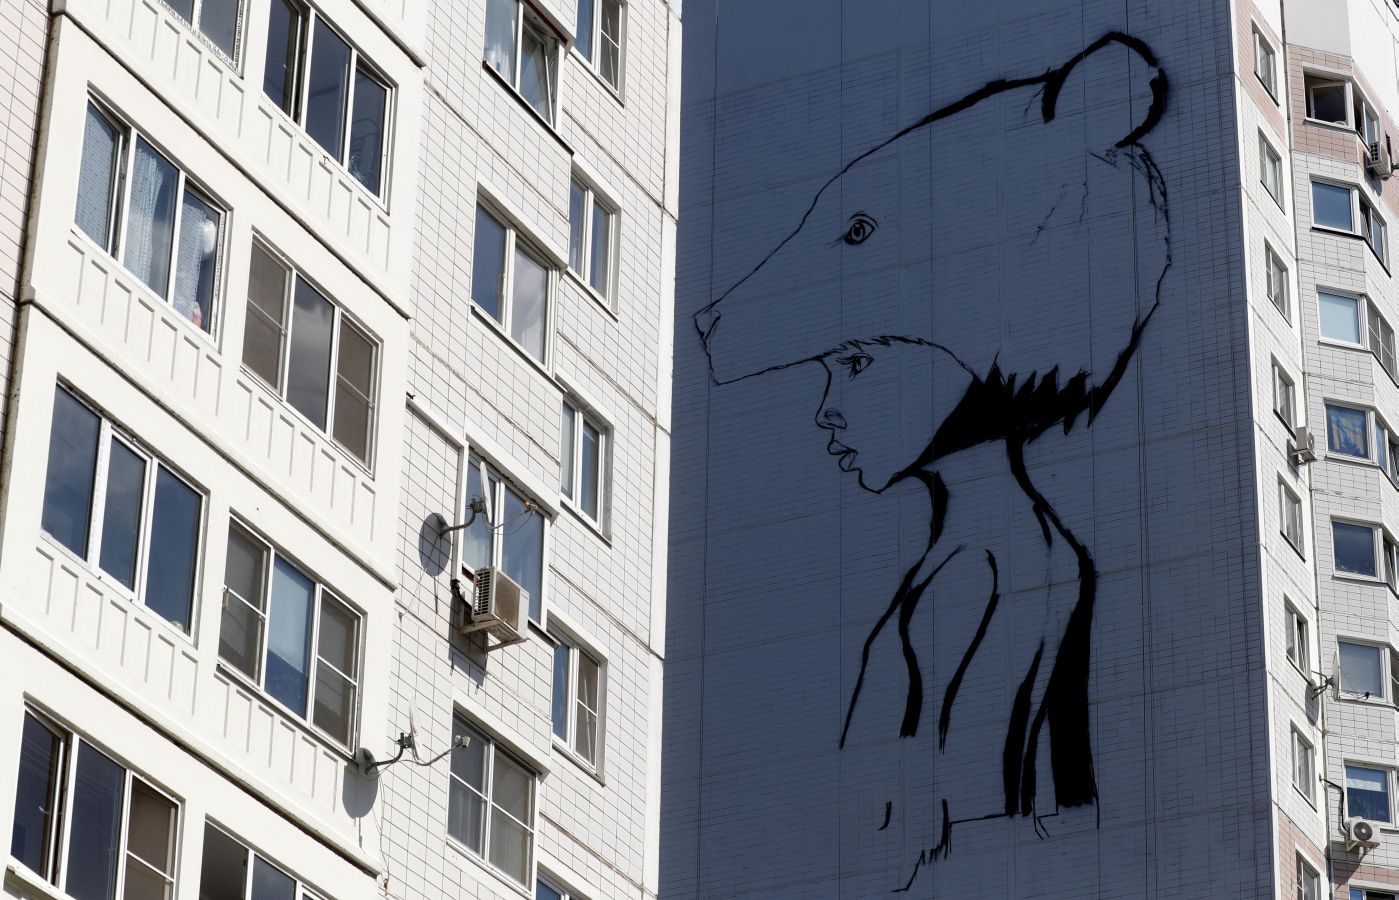 Fotos: Los murales más vistosos en Odintsovo